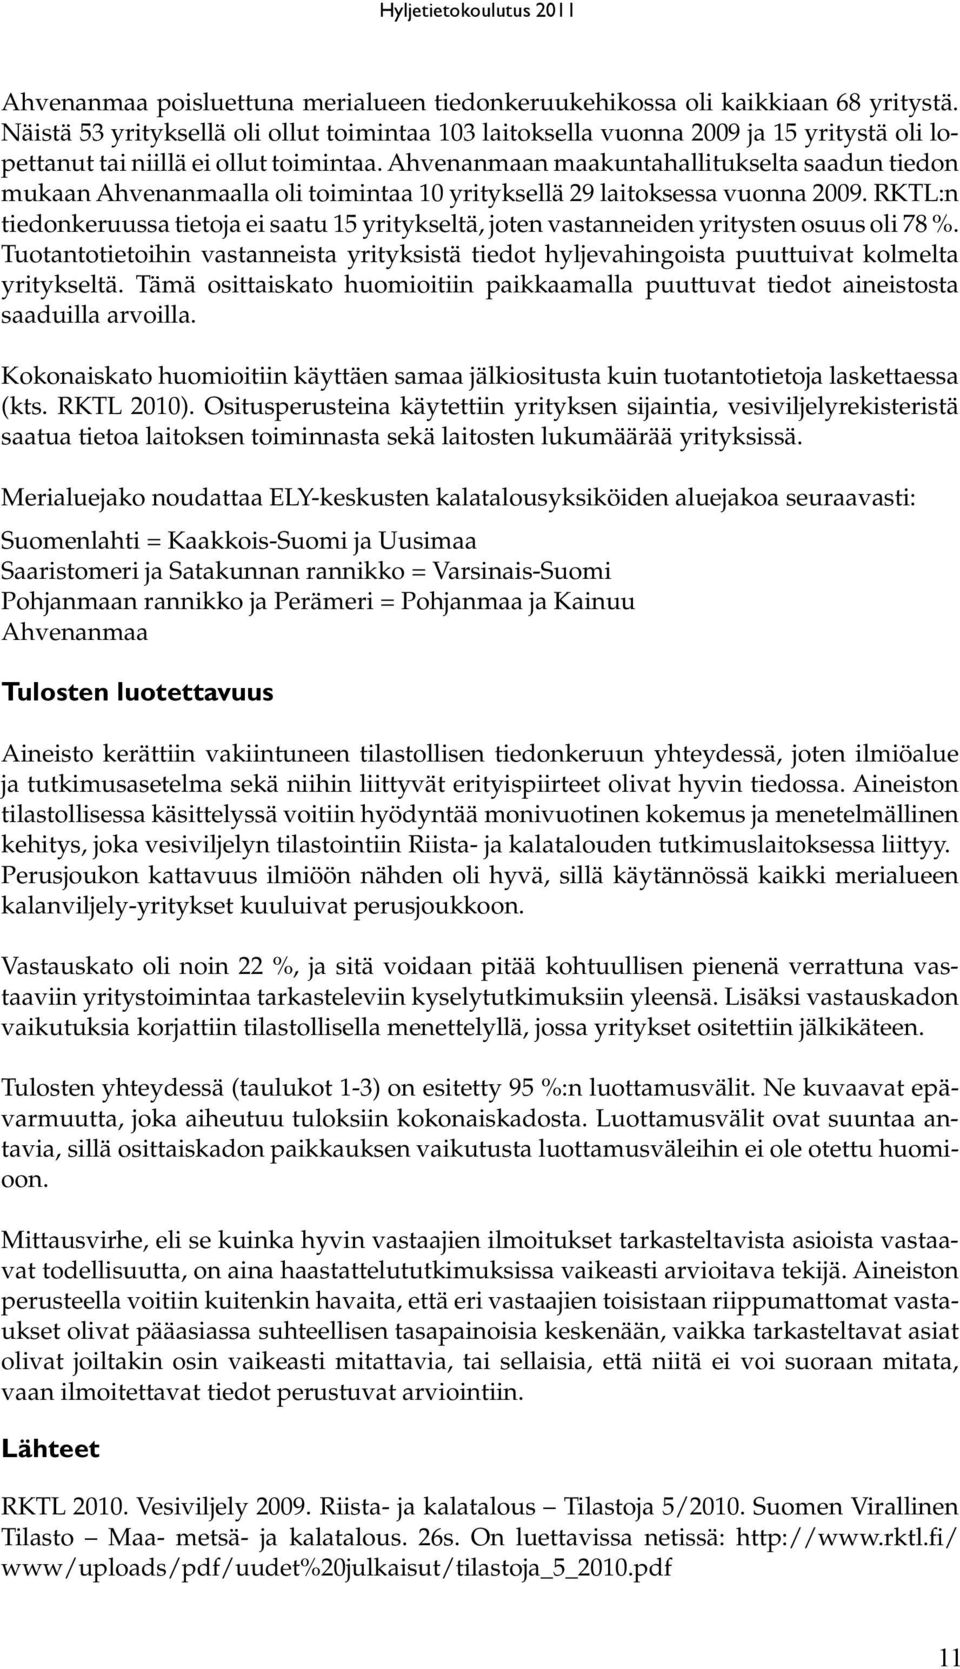 Ahvenanmaan maakuntahallitukselta saadun tiedon mukaan Ahvenanmaalla oli toimintaa 10 yrityksellä 29 laitoksessa vuonna 2009.